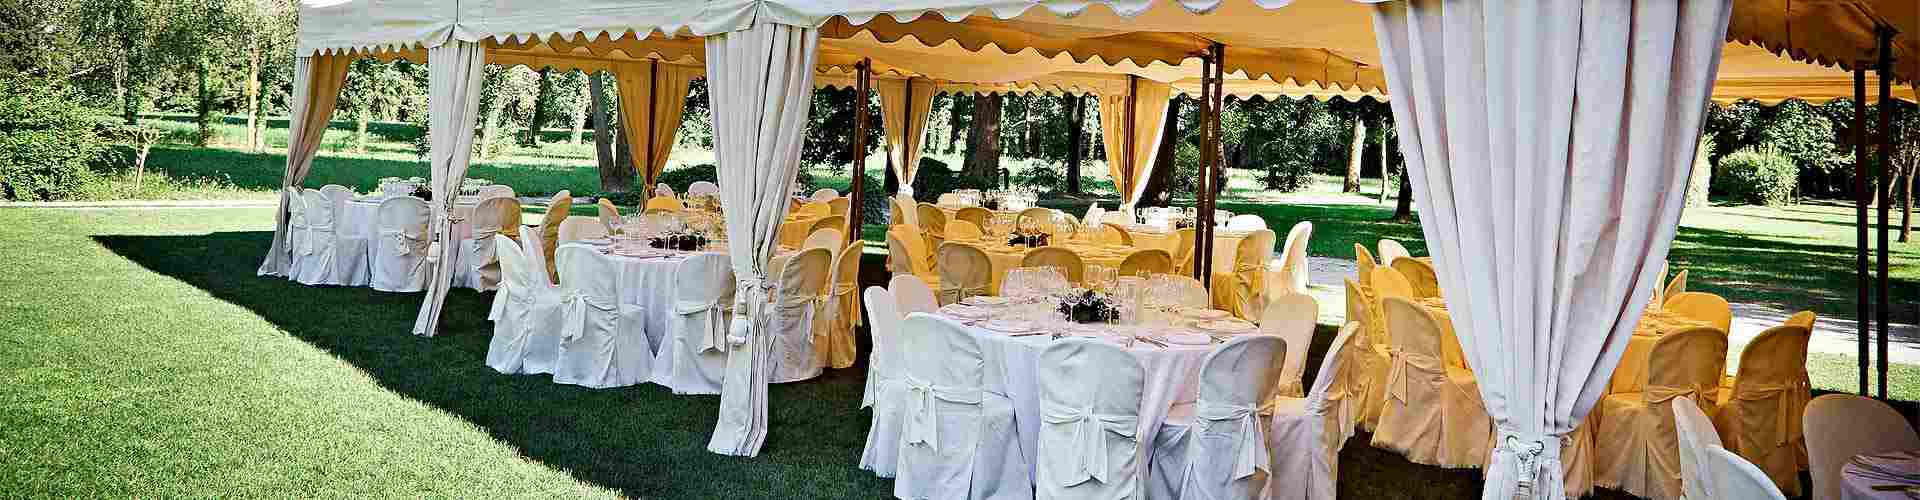 Restaurantes para bodas 2020 en Cires